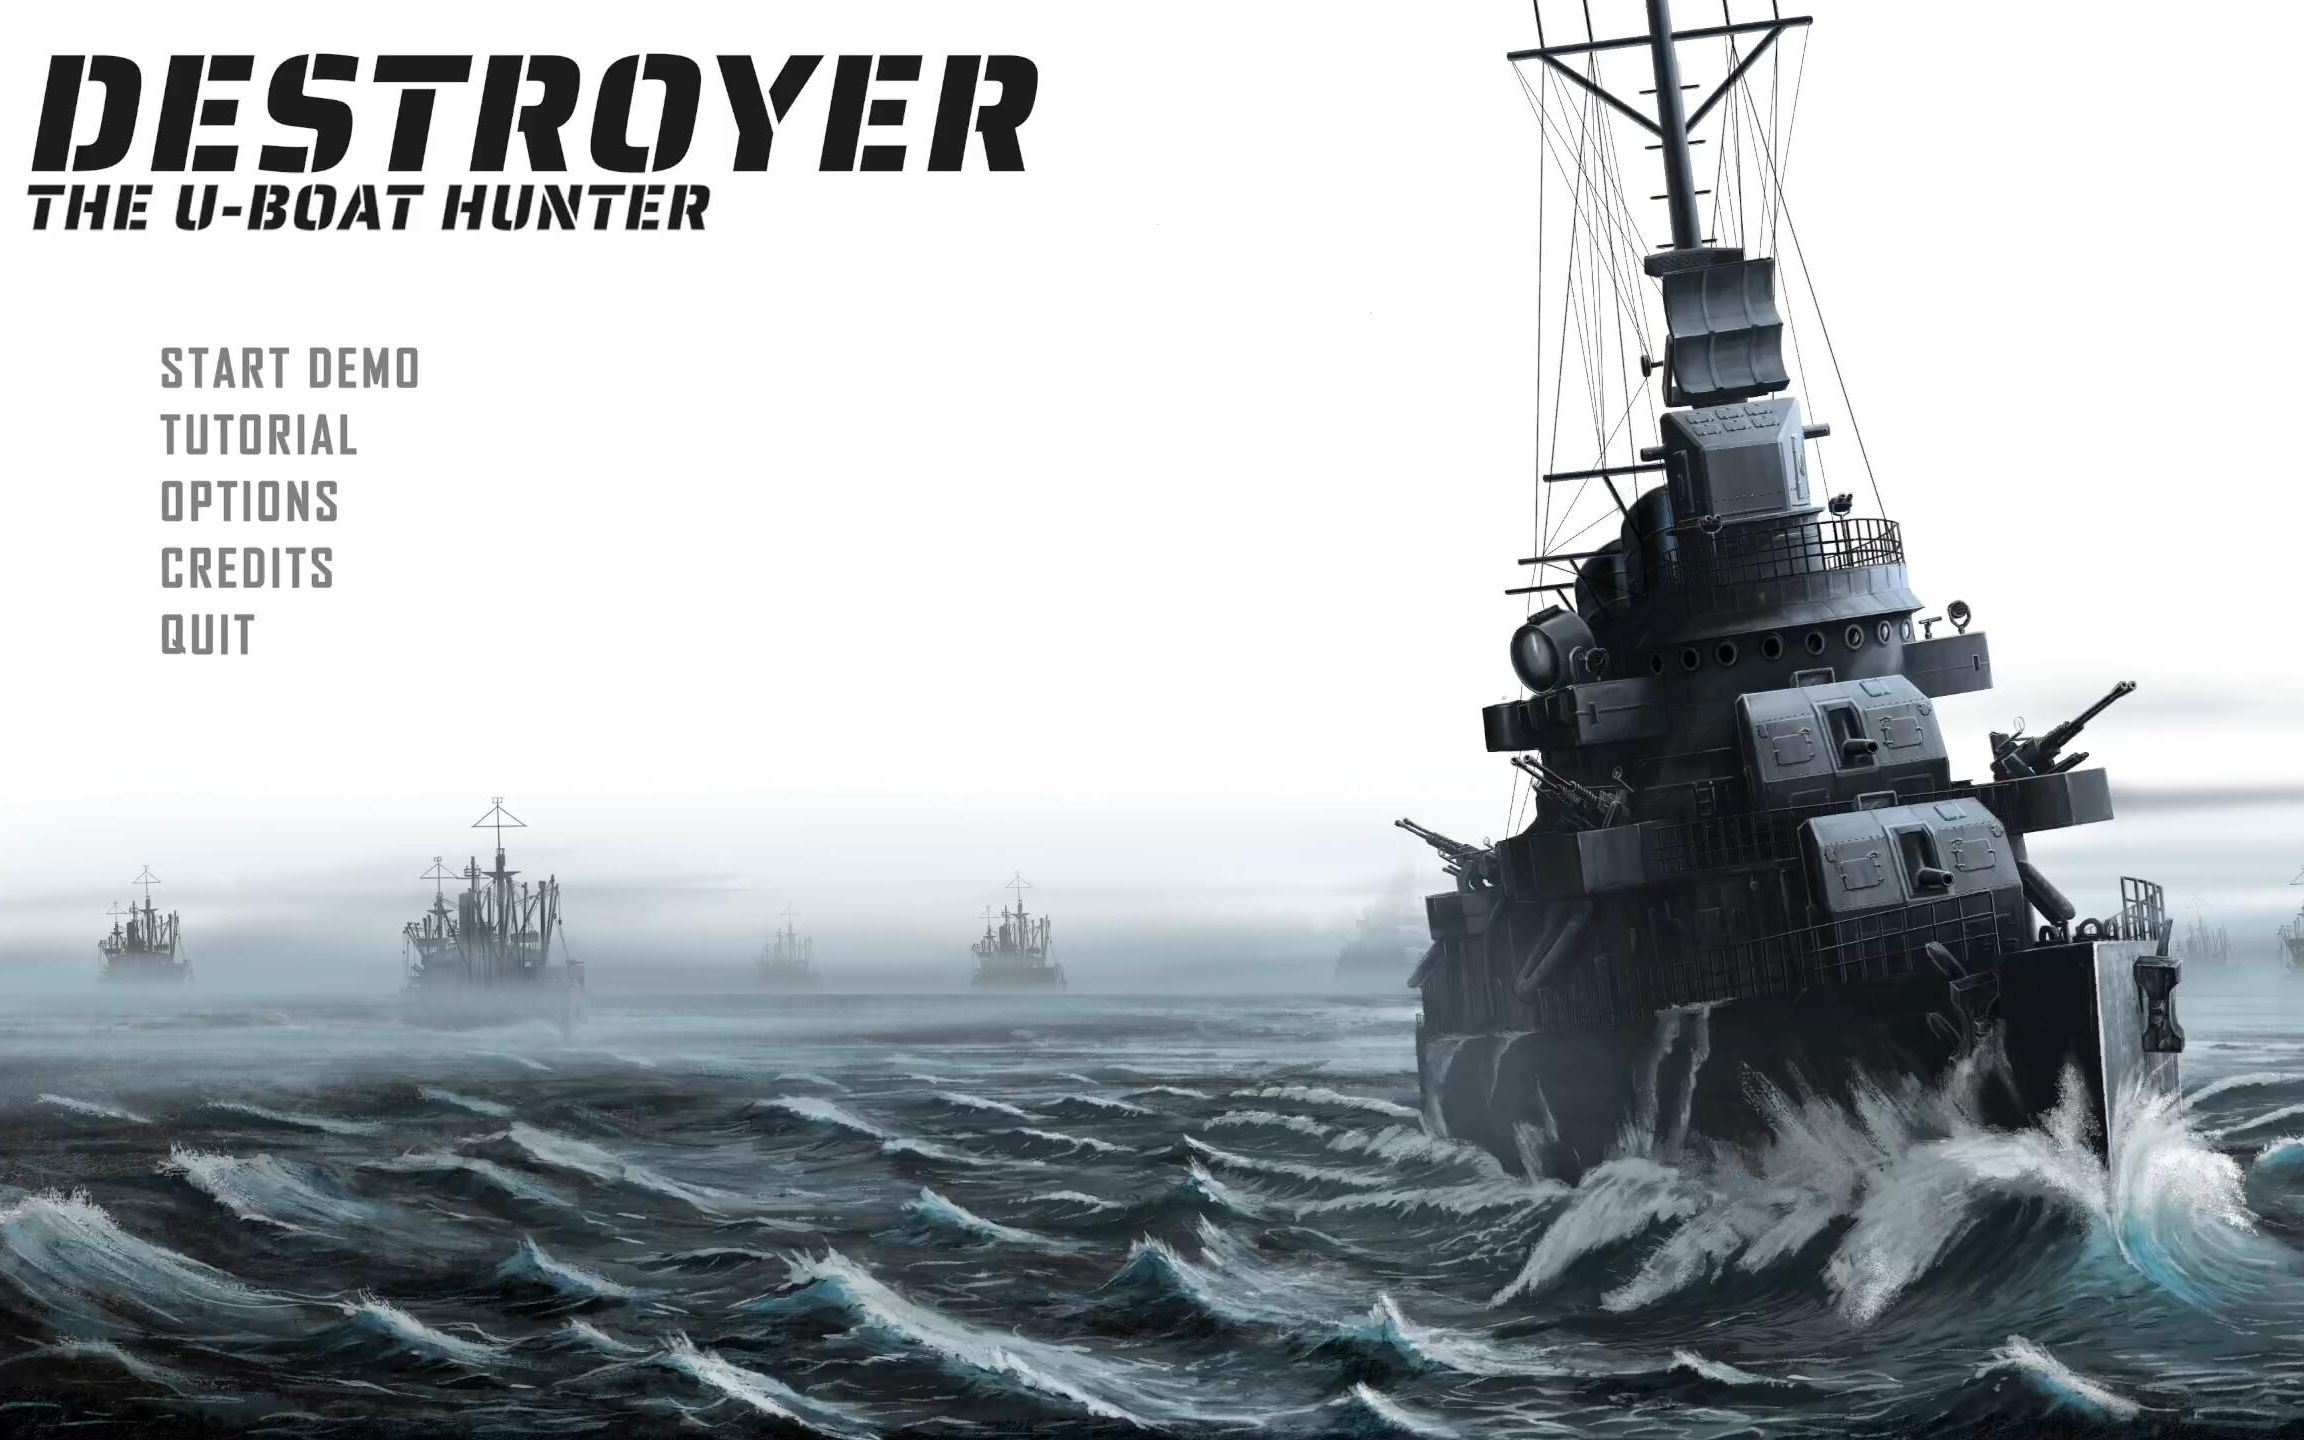 您完全不上浮是吗？——《驱逐舰：U艇猎手(Destroyer: The U-Boat Hunter)》反潜教程